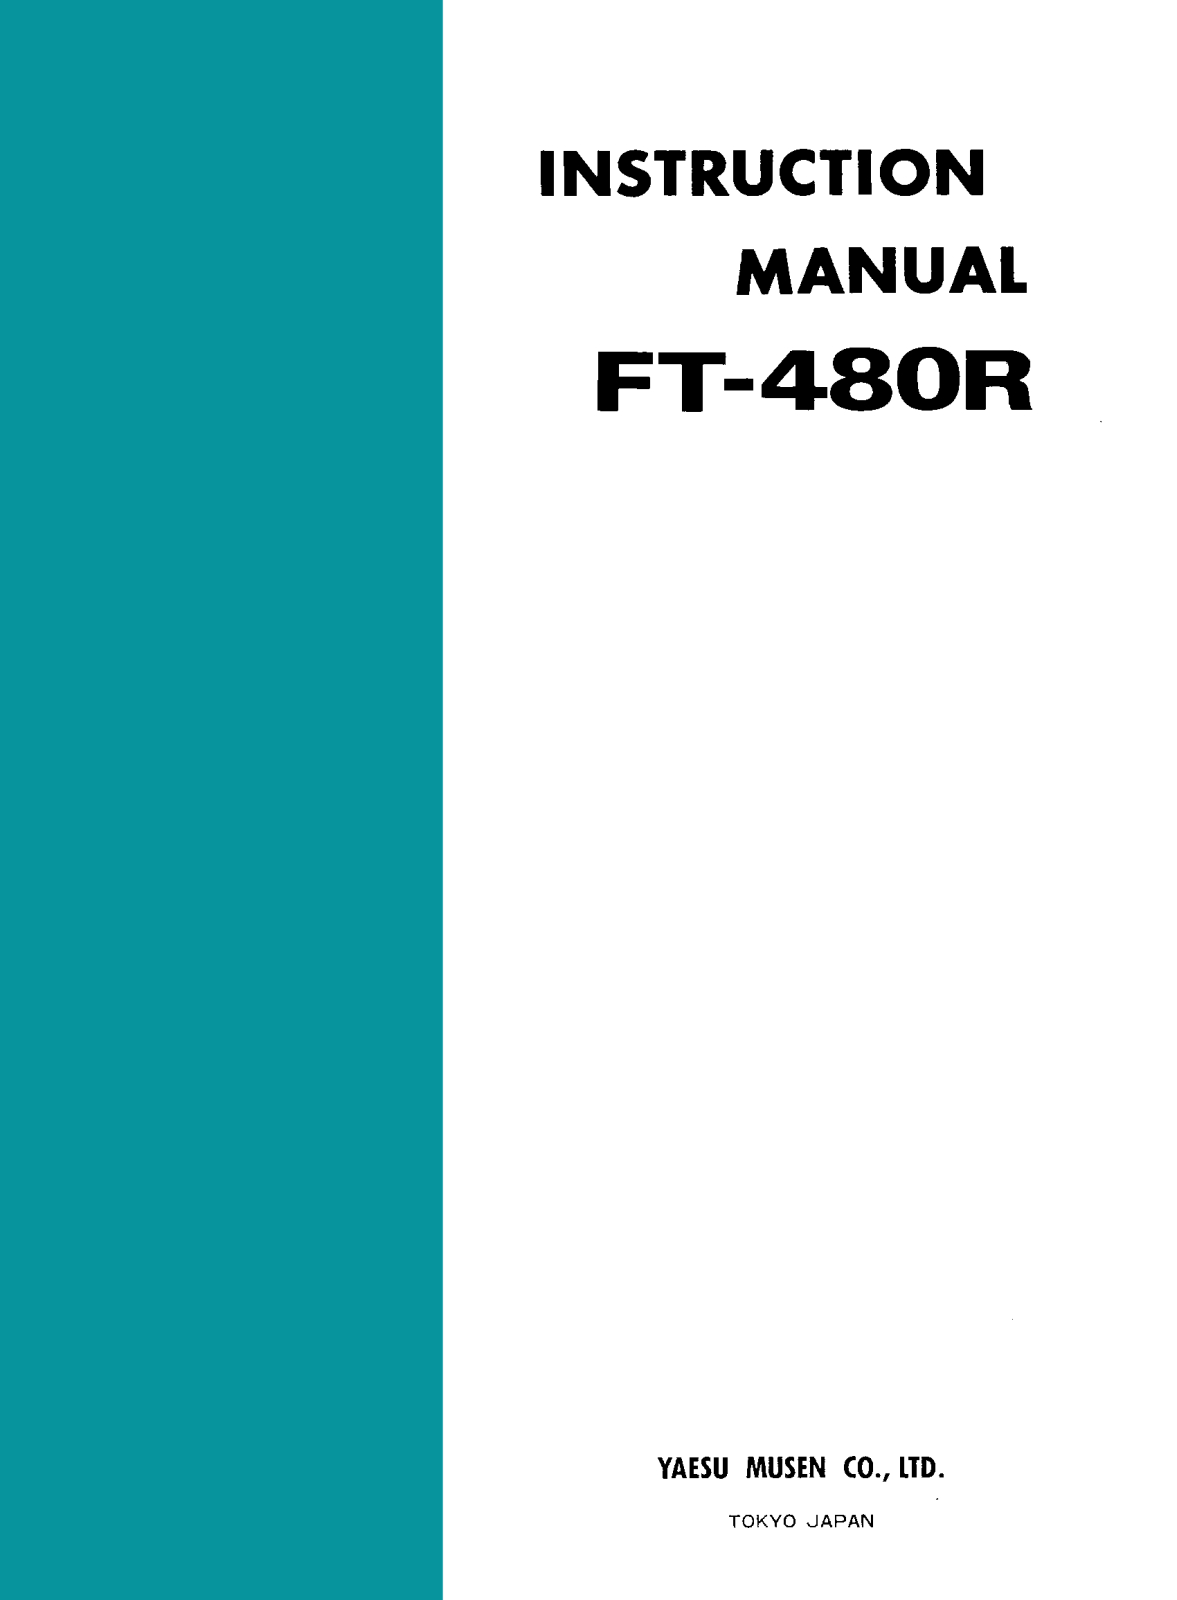 Yaesu FT-480R Manual